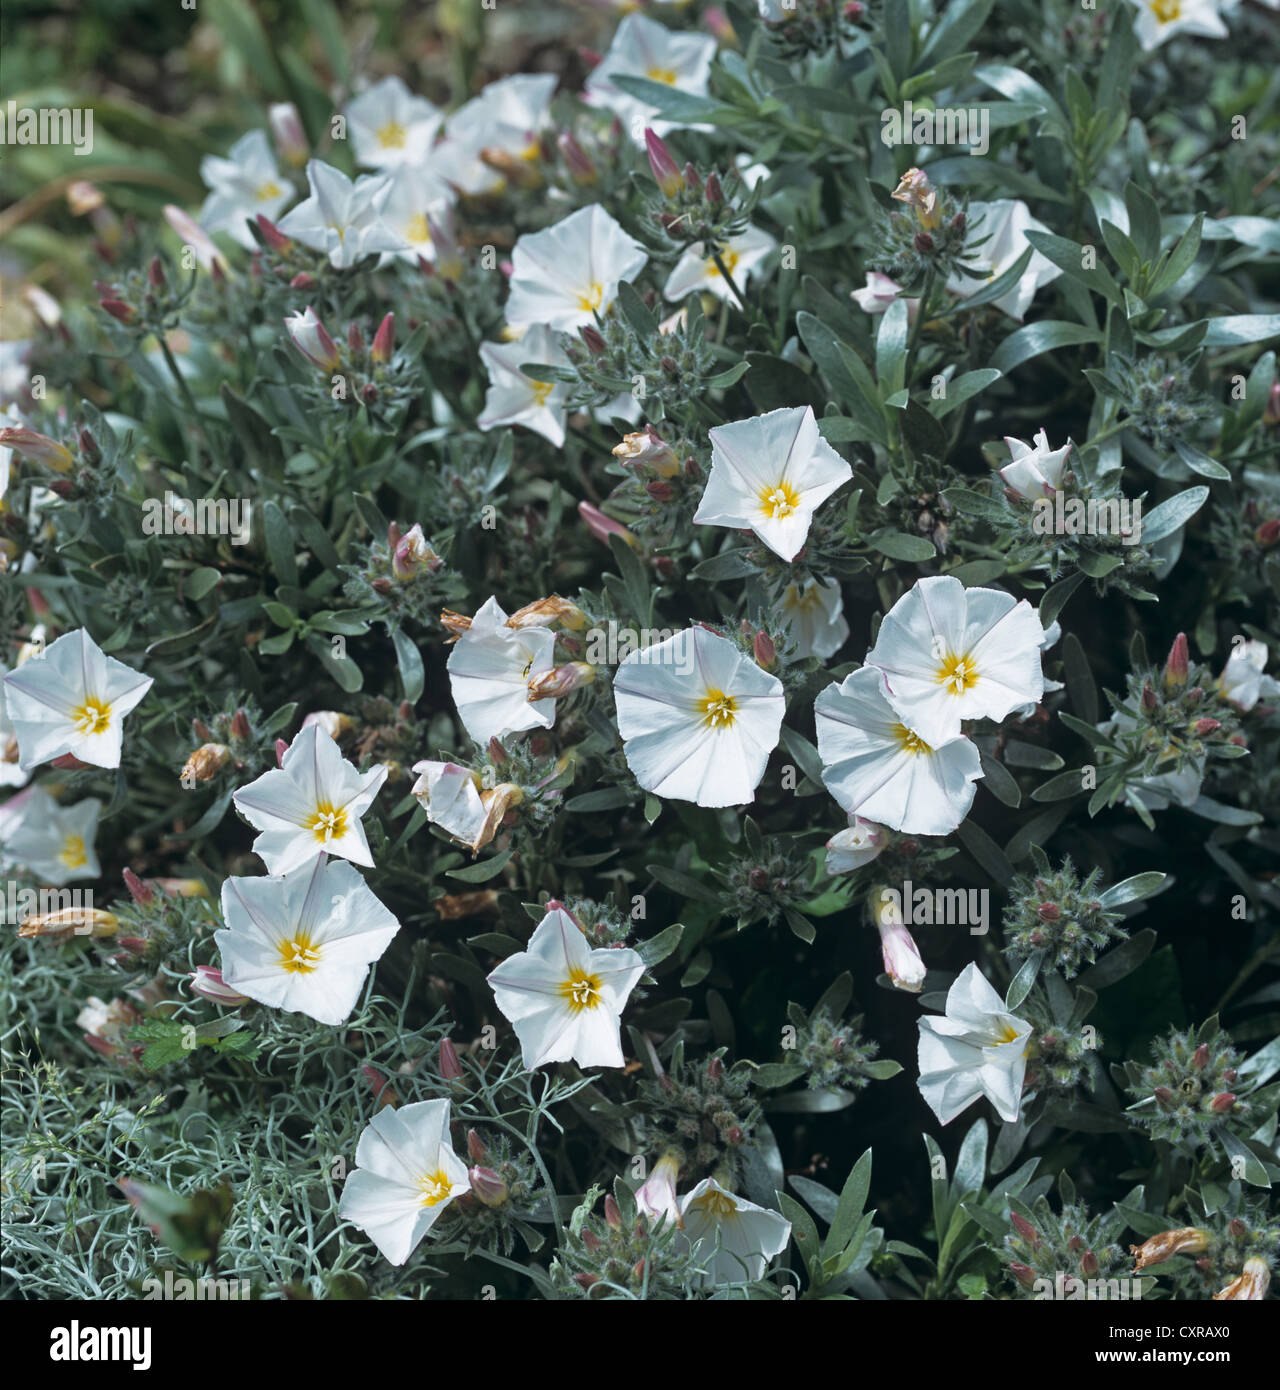 Centinodia ornamentali, Convolvulus cneorum, con fogliame grigio e bianco dei fiori Foto Stock